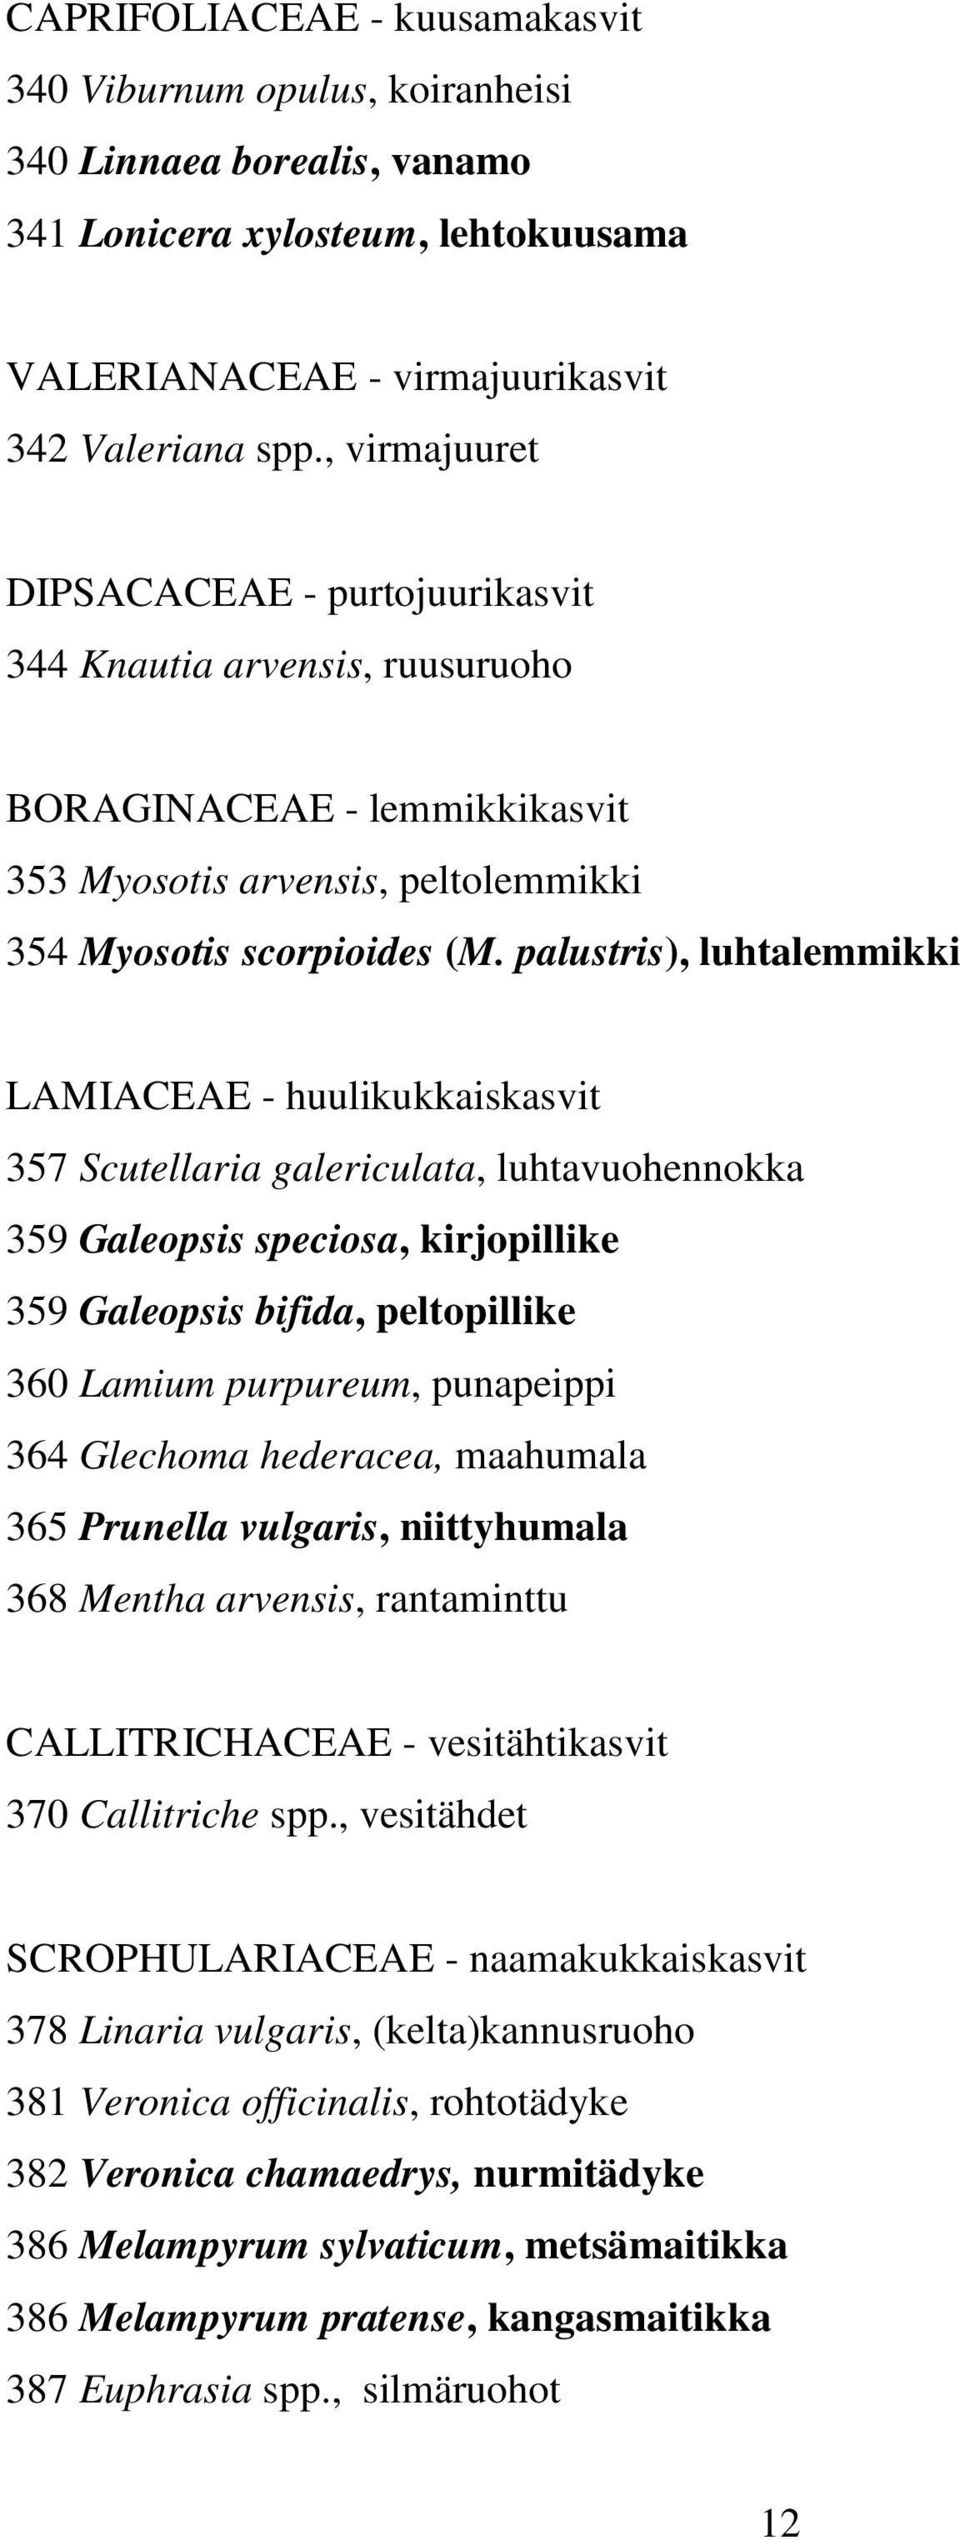 palustris), luhtalemmikki LAMIACEAE - huulikukkaiskasvit 357 Scutellaria galericulata, luhtavuohennokka 359 Galeopsis speciosa, kirjopillike 359 Galeopsis bifida, peltopillike 360 Lamium purpureum,